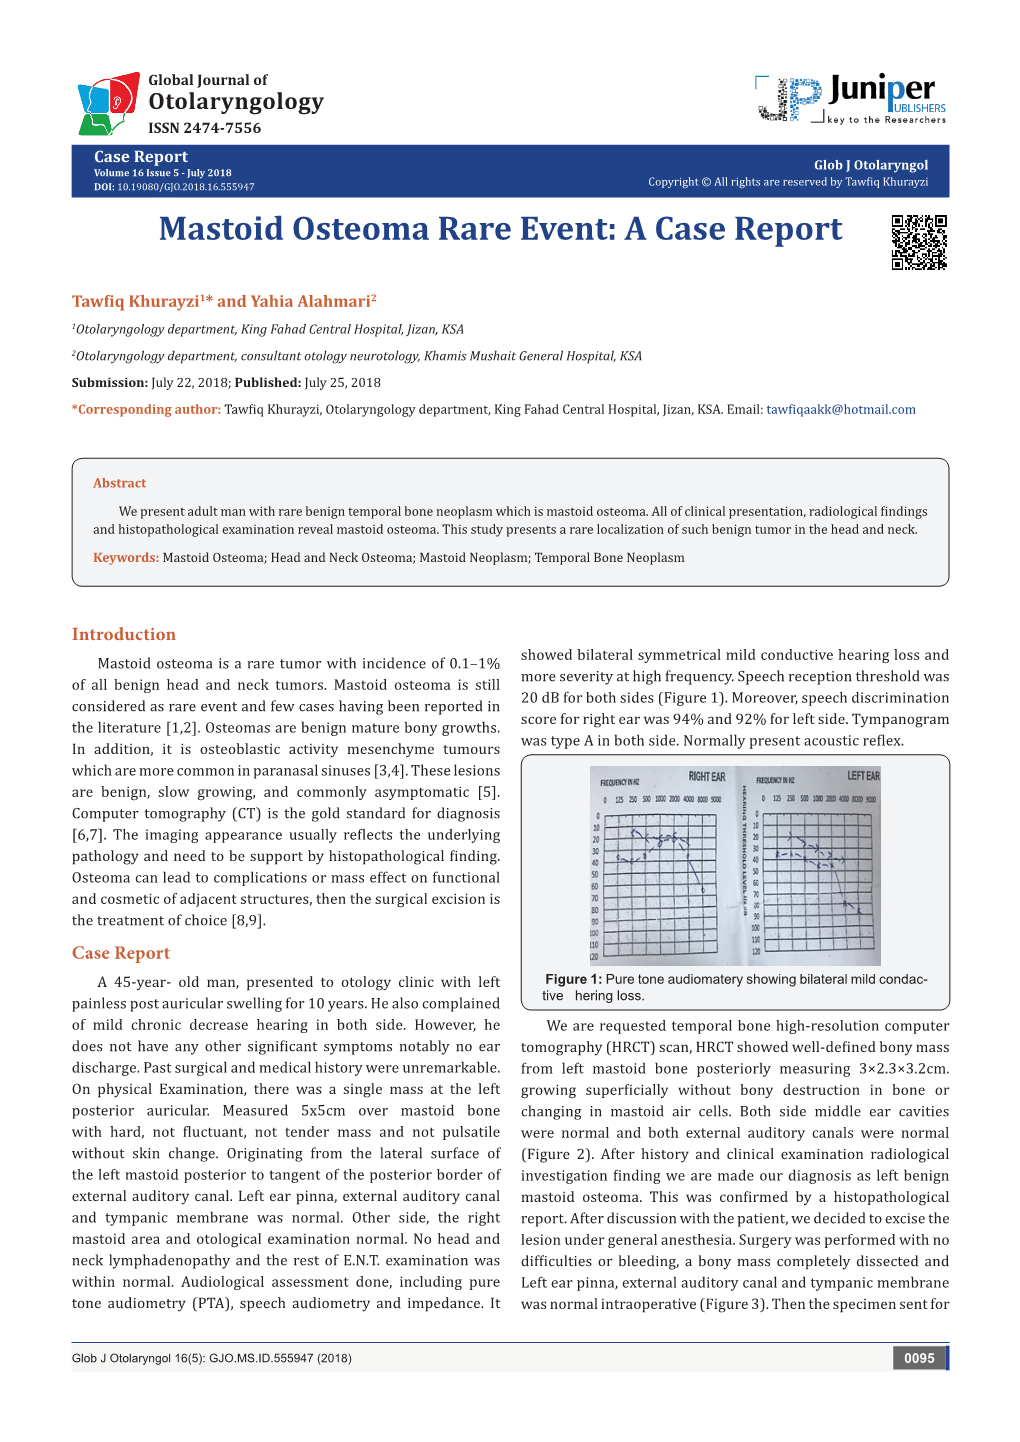 Mastoid Osteoma Rare Event: a Case Report